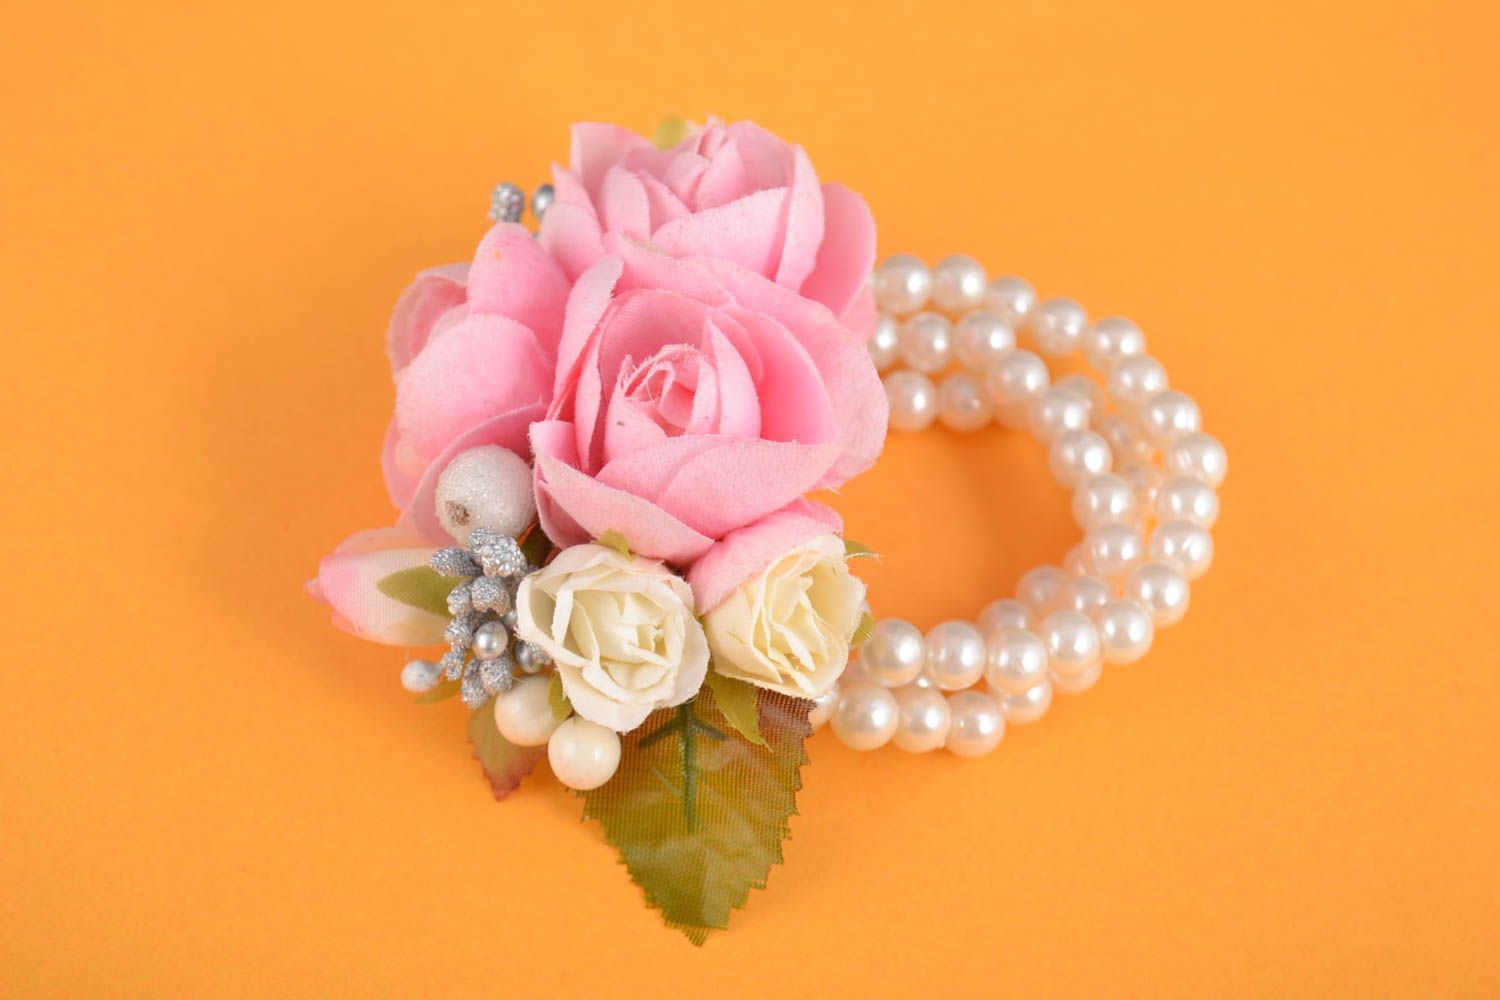 Handmade Armband Trauzeugin Blumenarmband Geschenk für Brautjungfer festlich foto 1